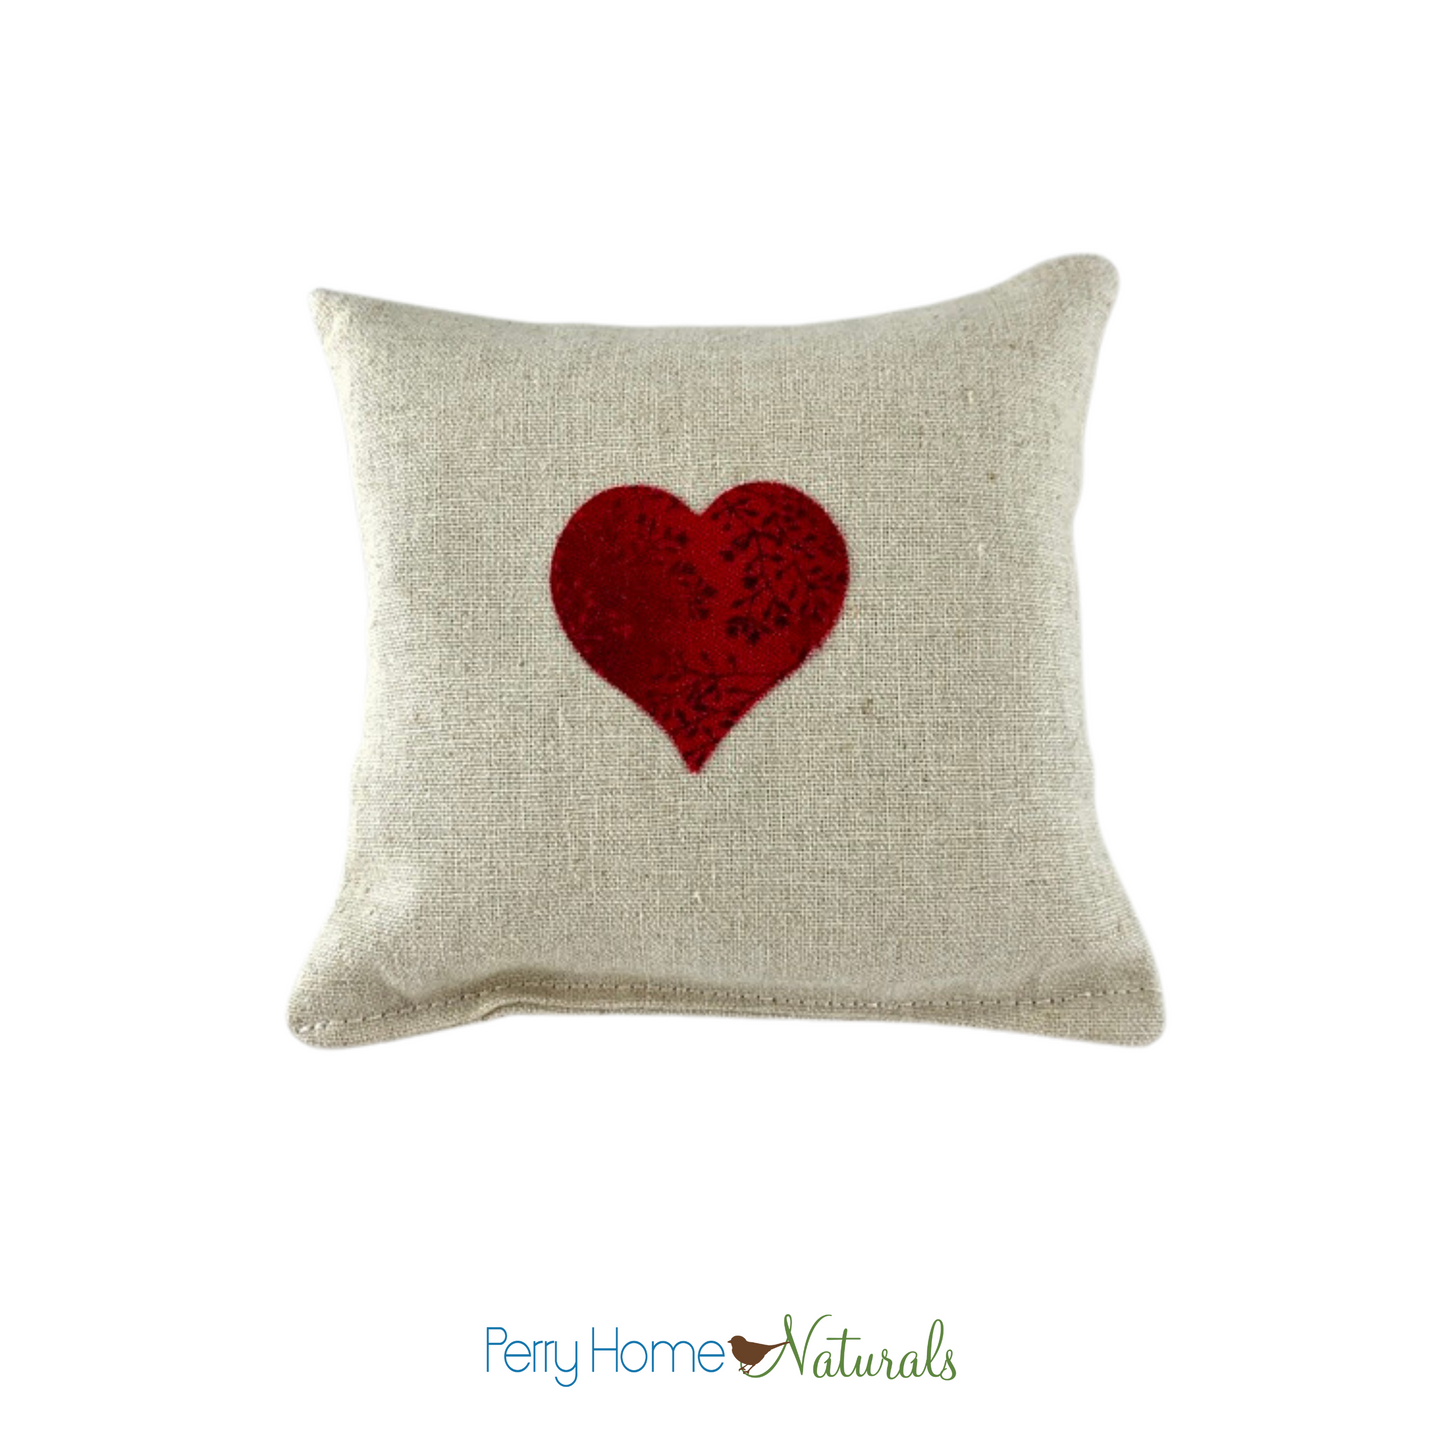 Love Heart Sachet - Lavender or Balsam Fir Pillow